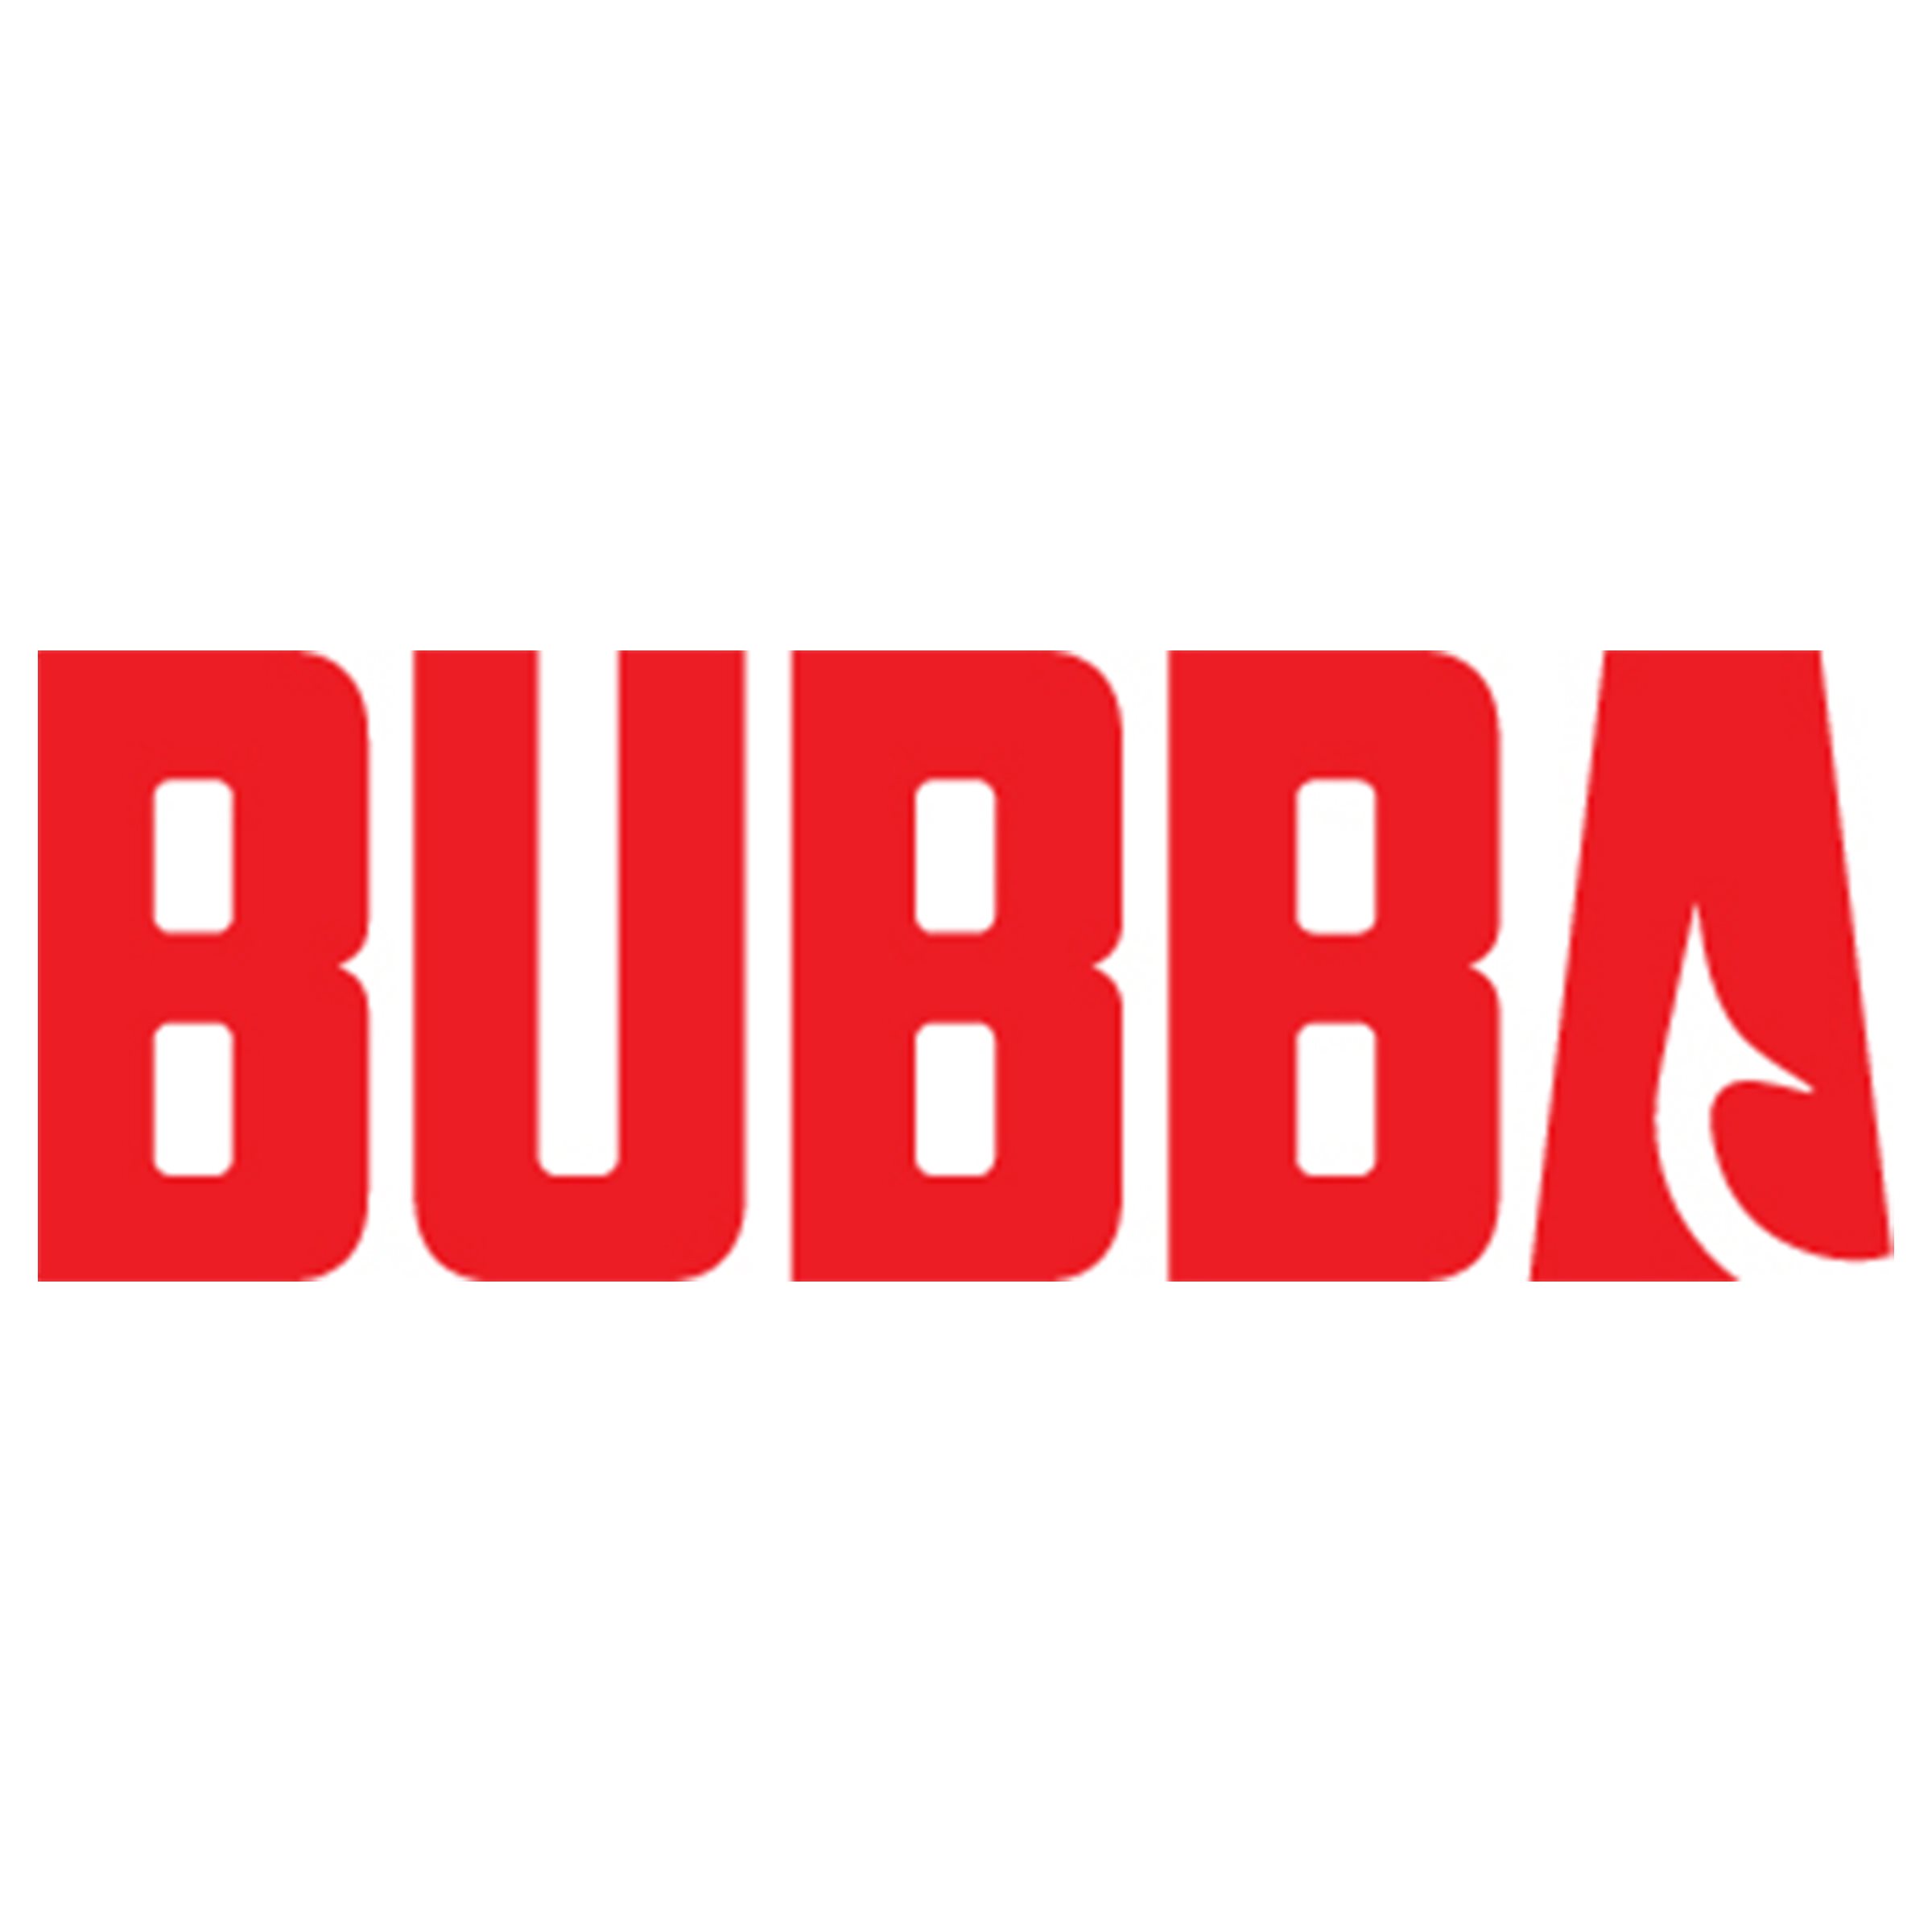 A_Bubba_logo